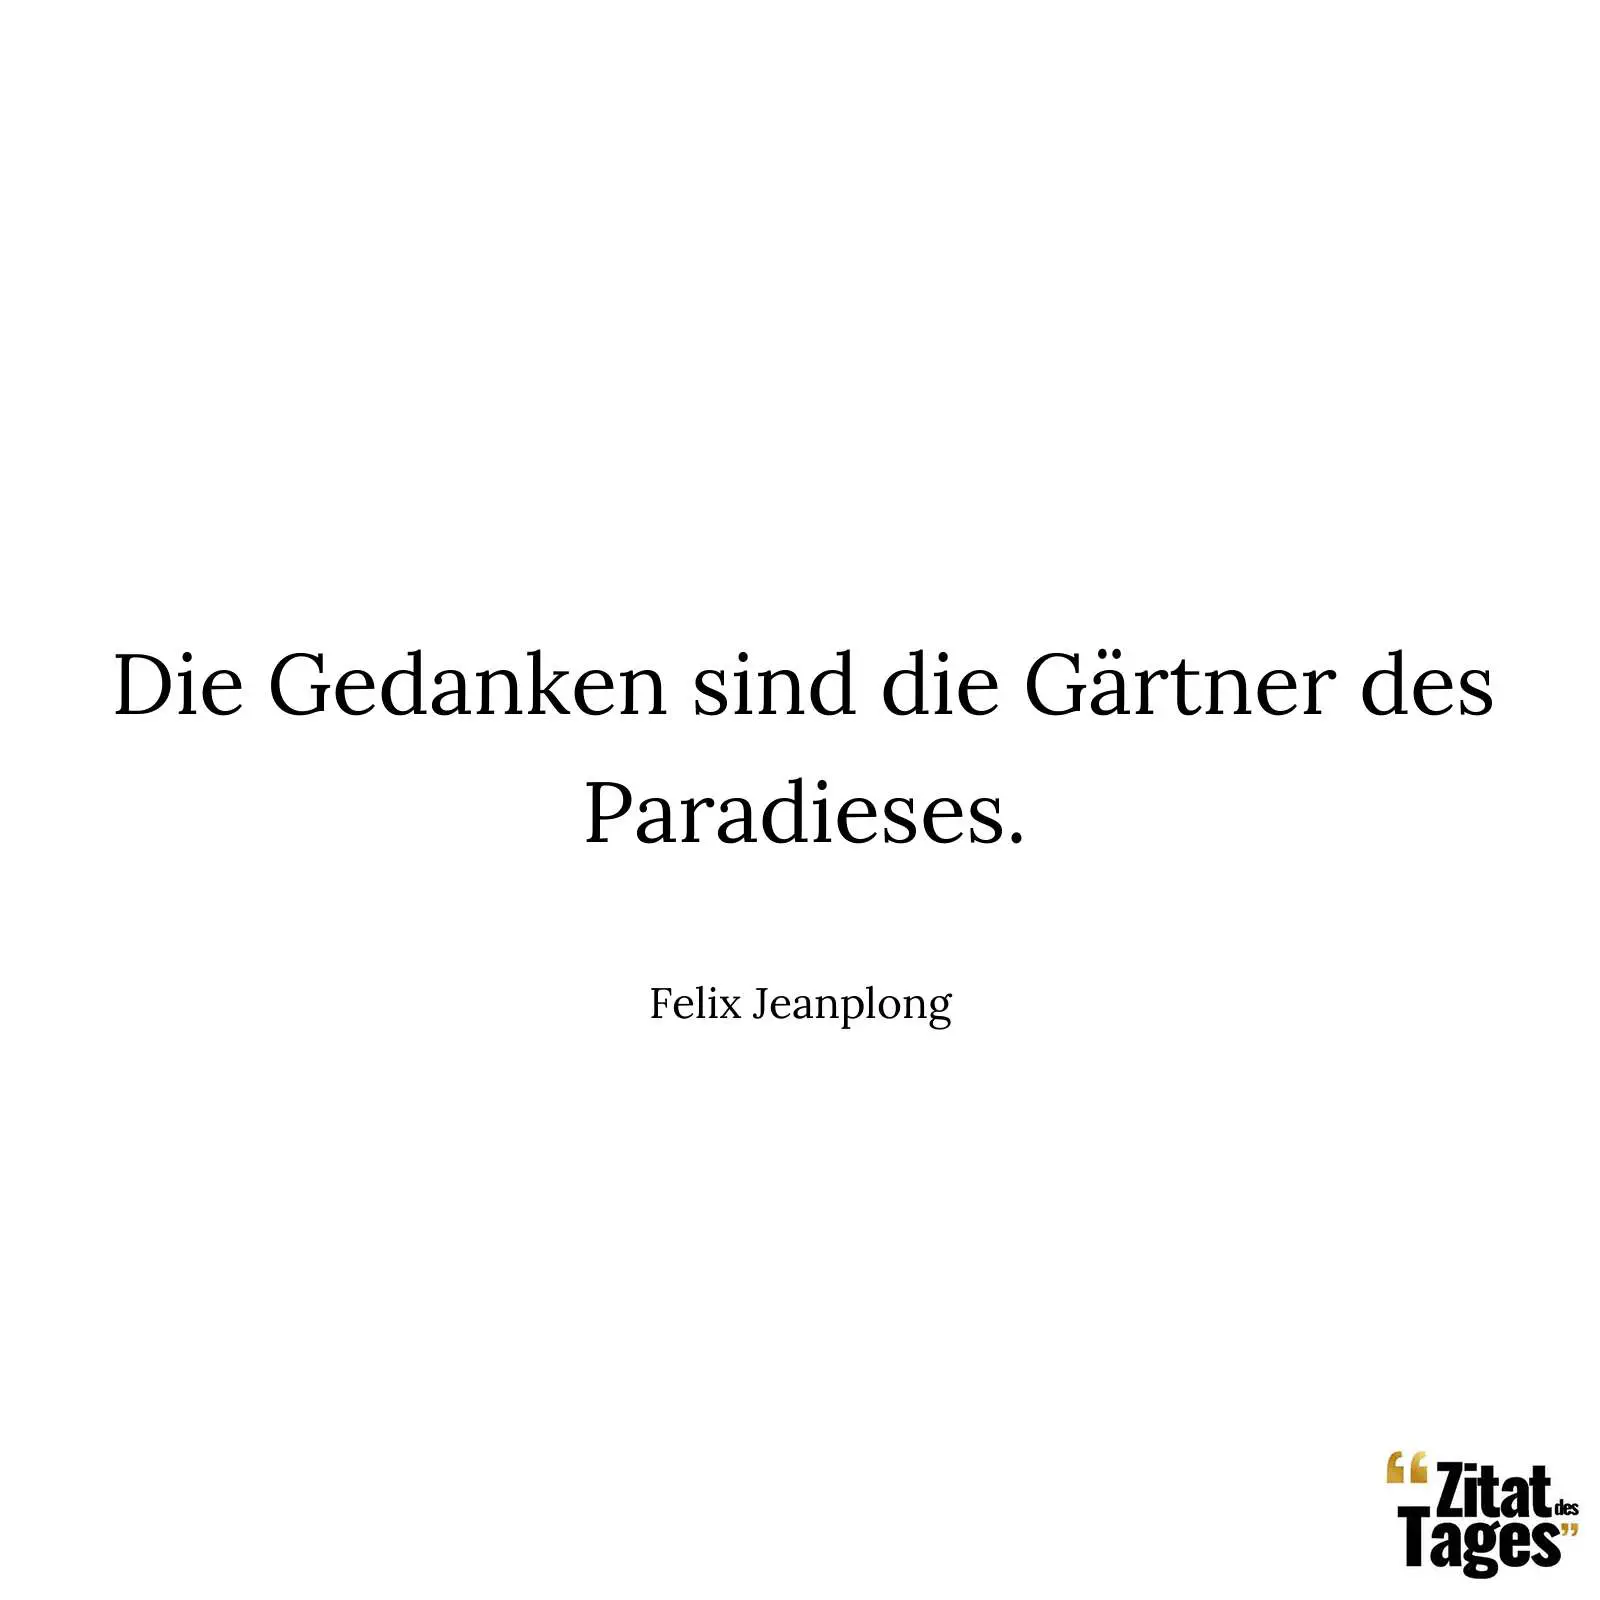 Die Gedanken sind die Gärtner des Paradieses. - Felix Jeanplong